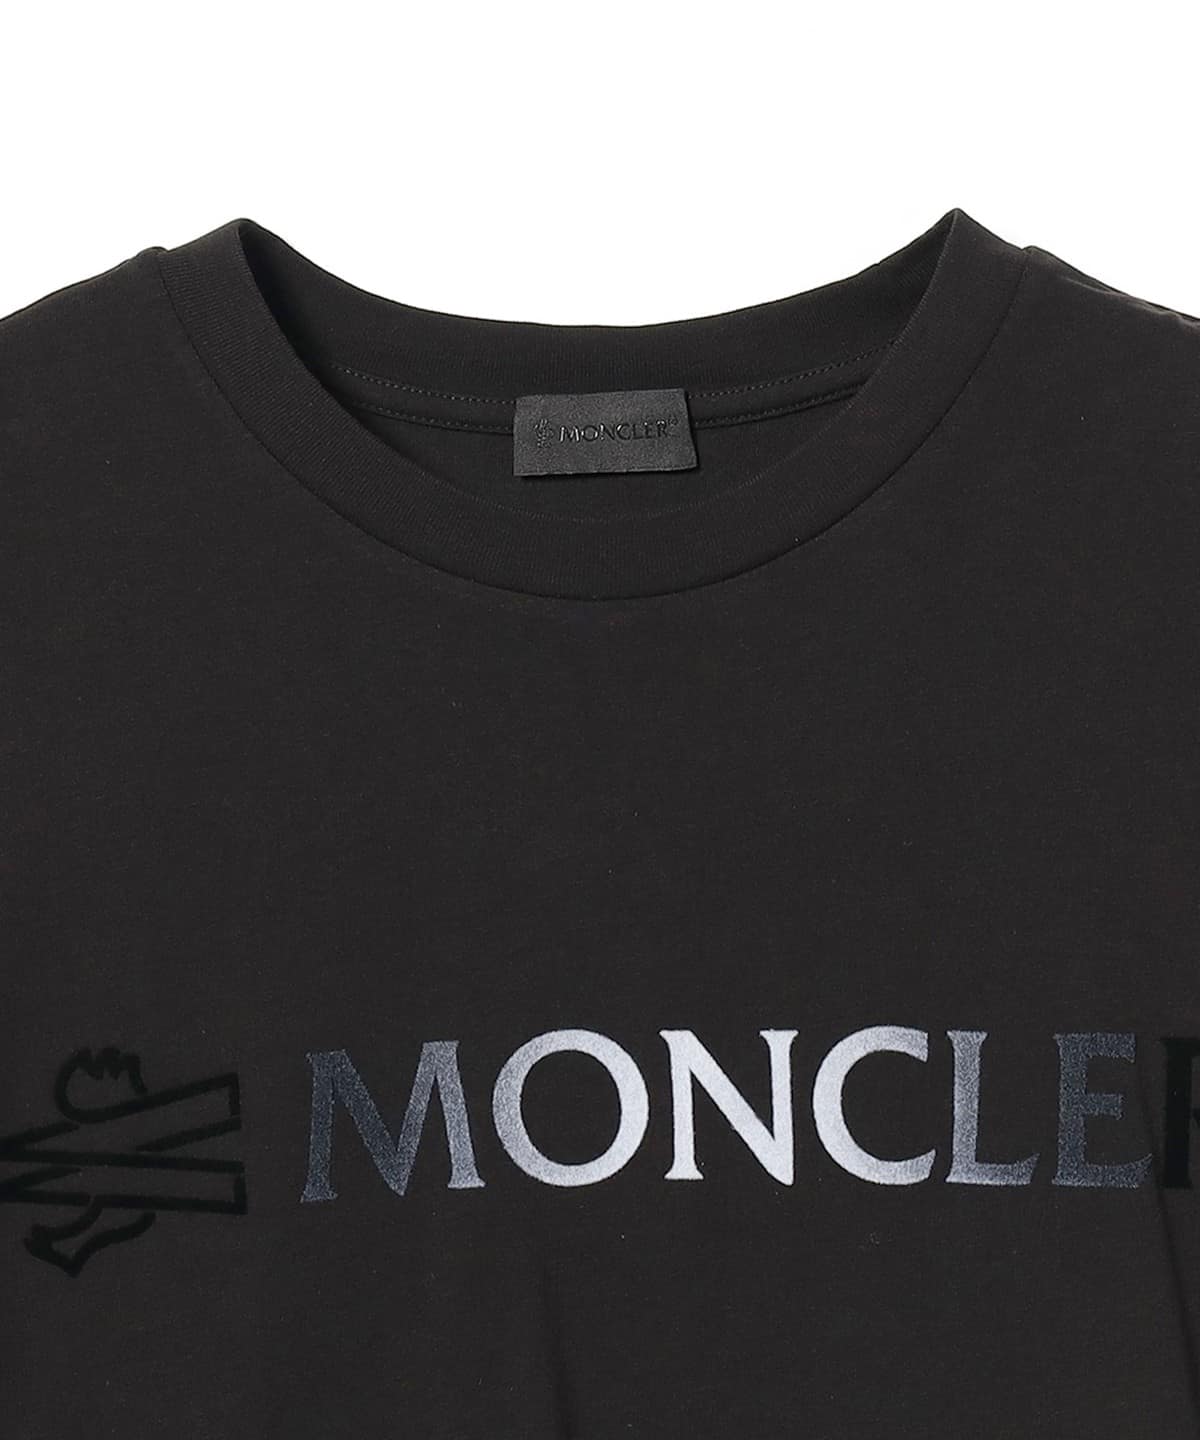 興味のある方は是非MONCLER / グラデーションロゴ クルーネックTシャツ